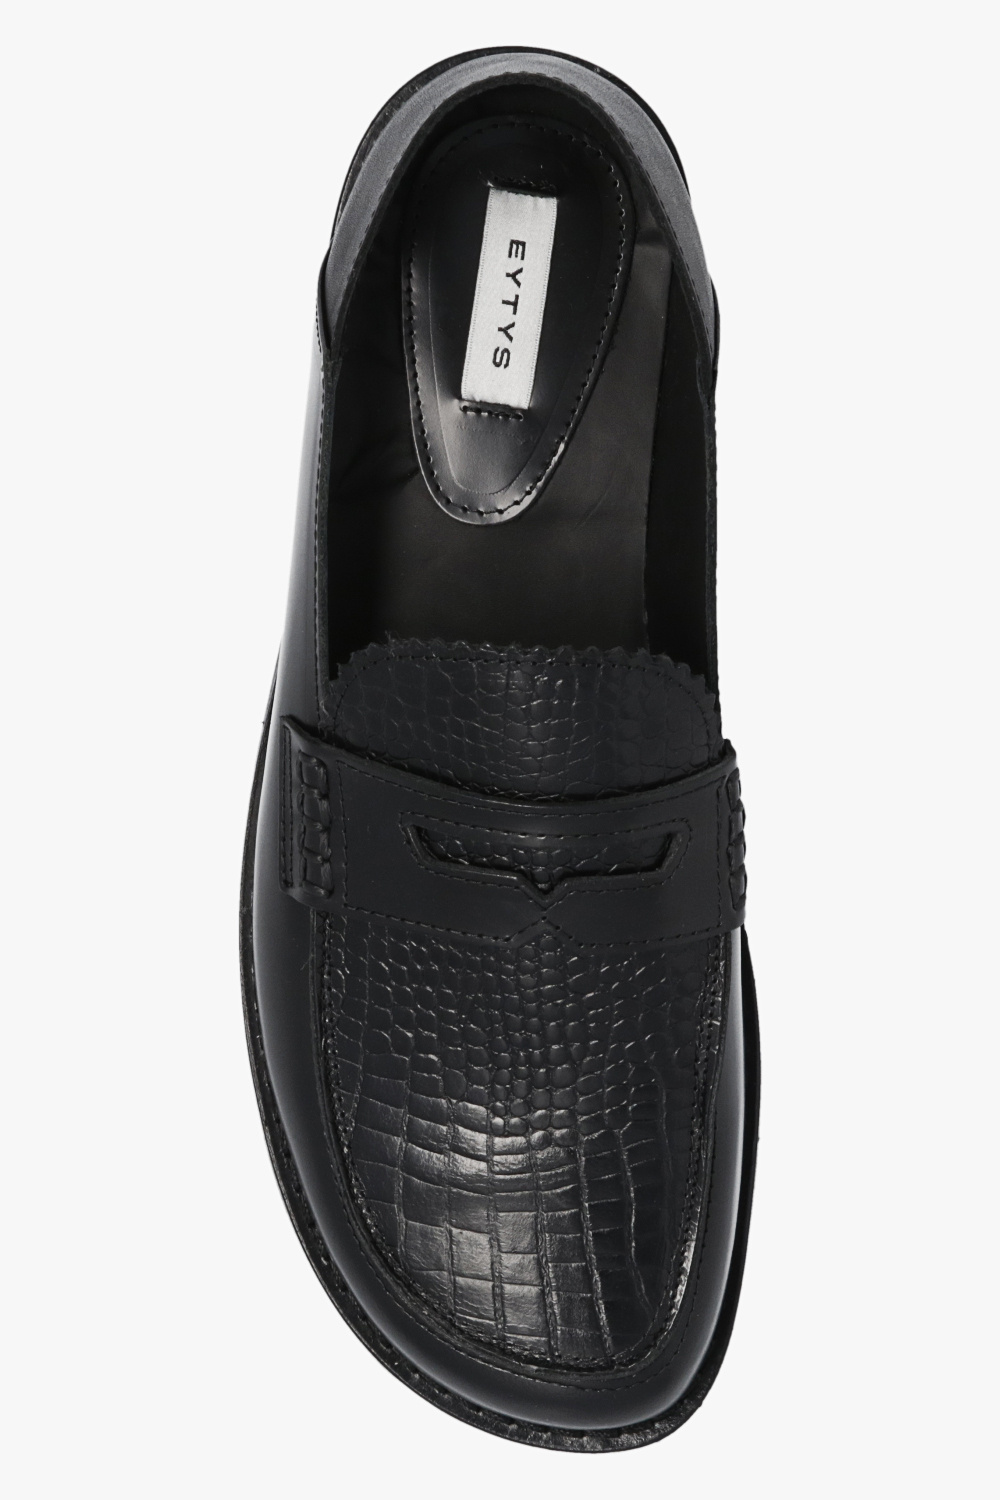 Eytys ‘Otello’ leather GINO shoes